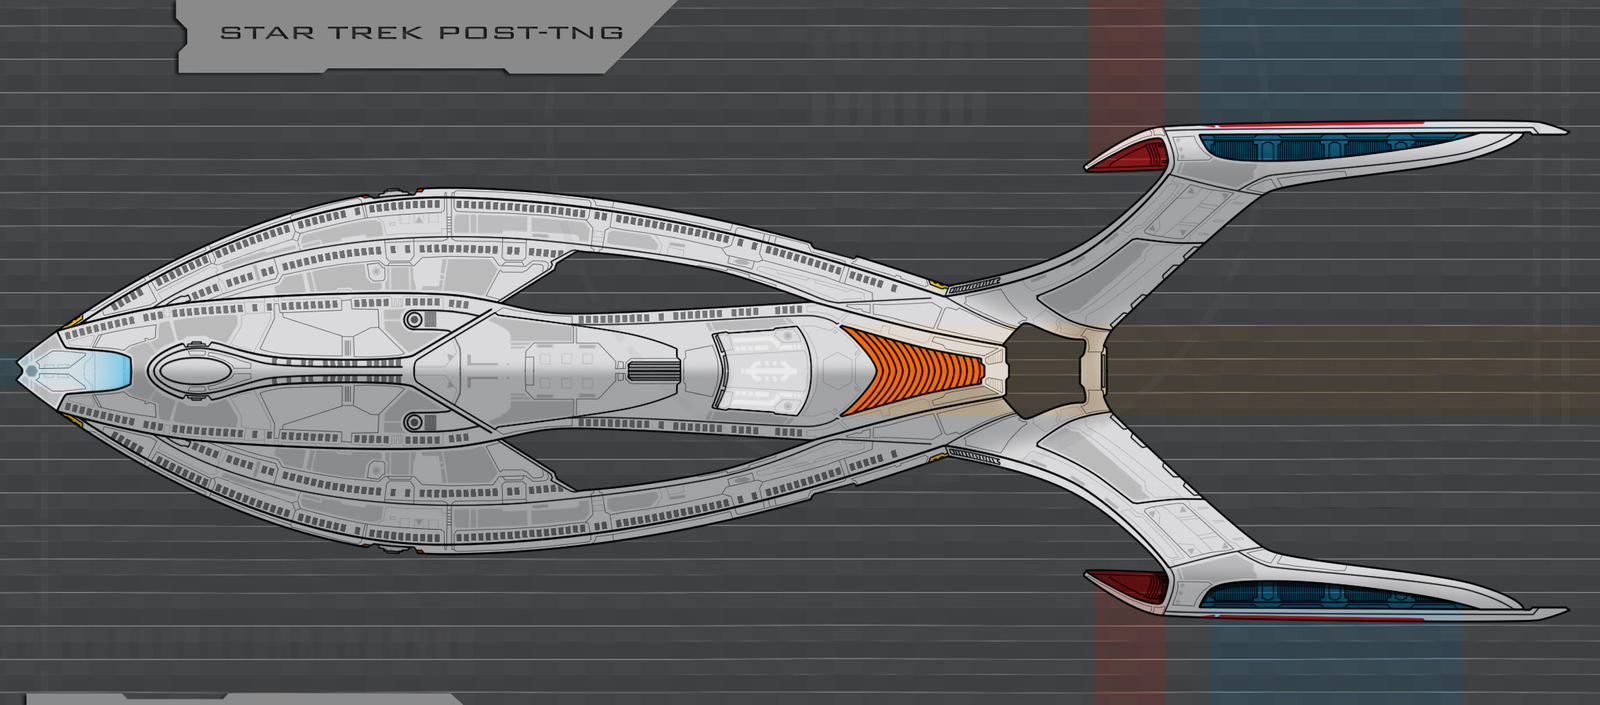 Star Trek postTNG ship by AdamKop on DeviantArt